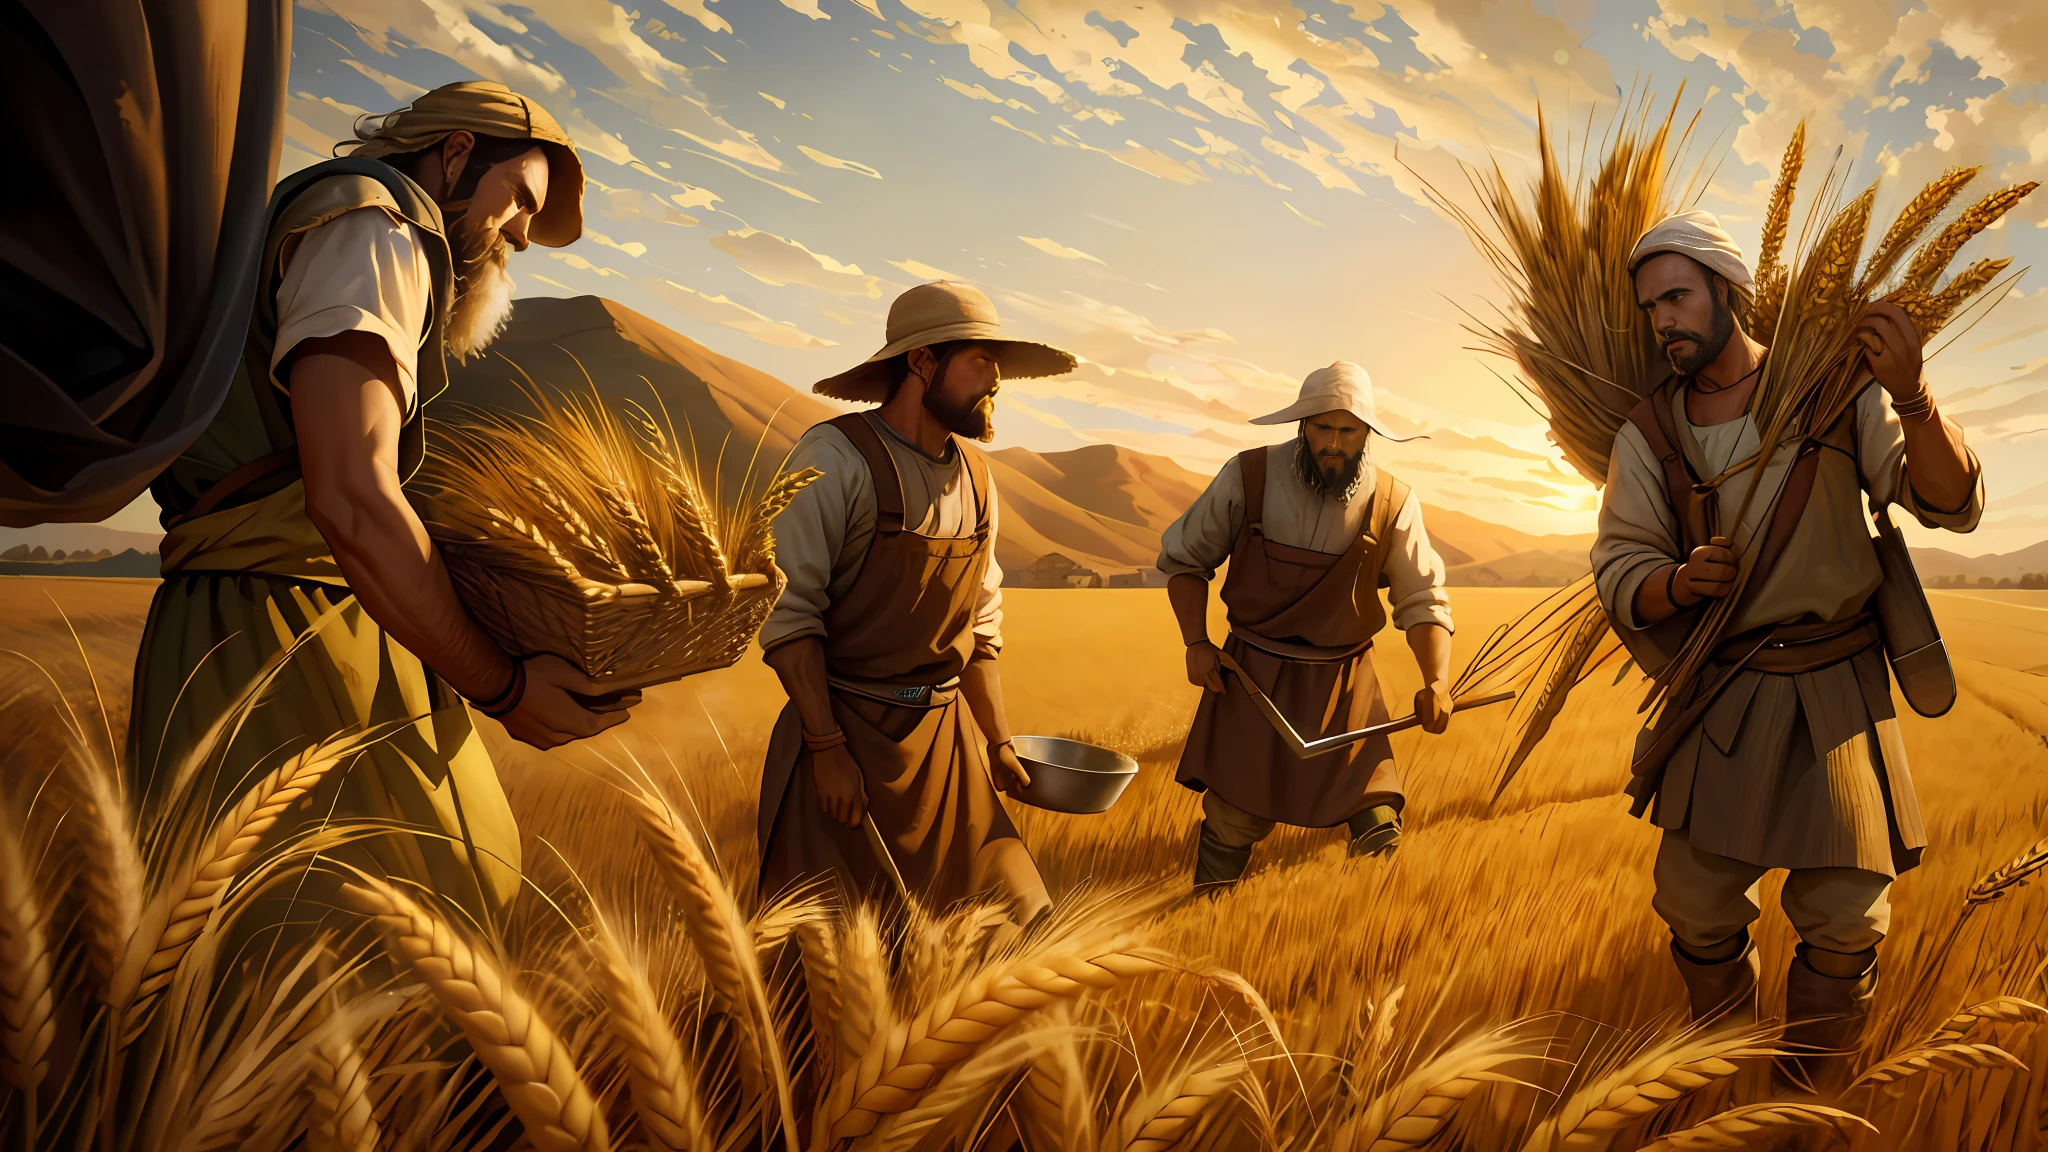 Pintura a óleo, há três homens colhendo trigo no campo, plantio de trigo, representação bíblica épica, 8k hd, iluminação cinematográfica, alta qualidade, --s2